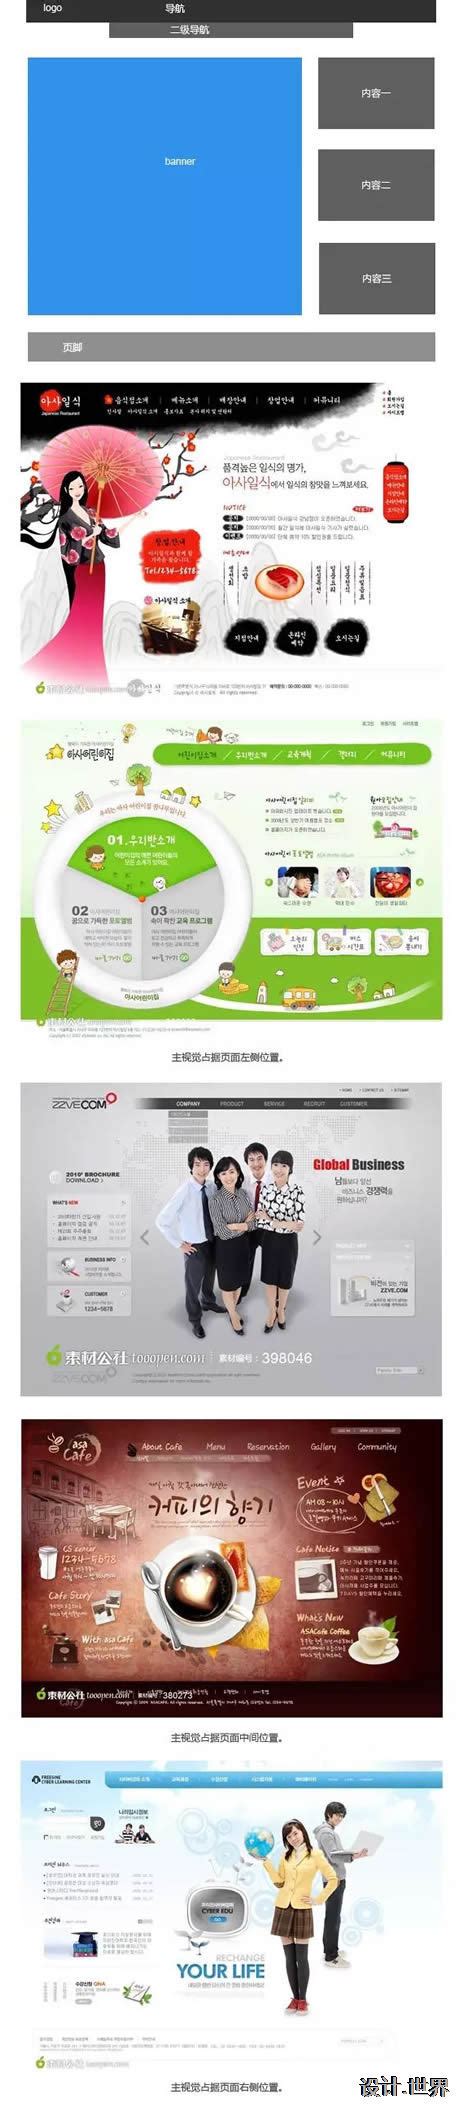 企业网站首页设计常见的6种布局方式 | 上海网站设计,上海网站制作 | 网站营销知识